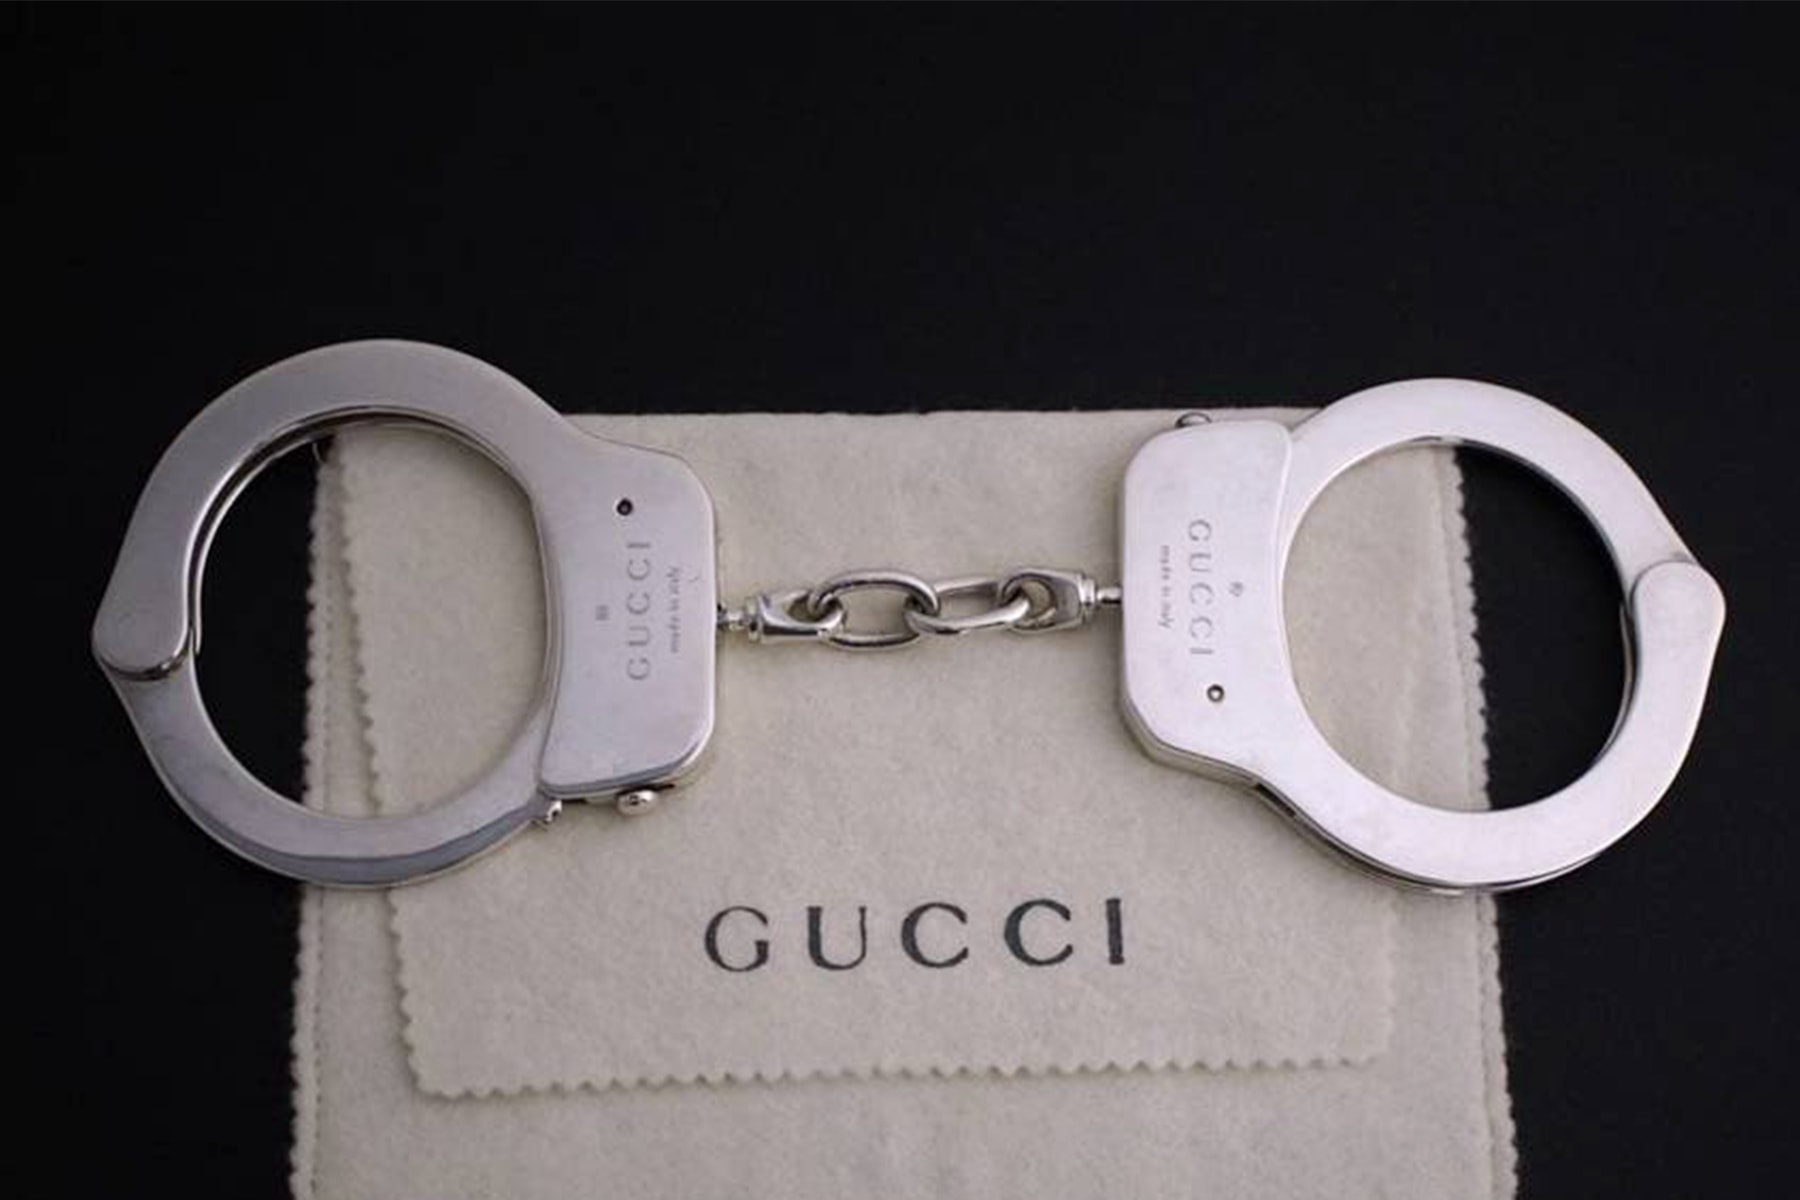 Gucci の手錠がリセールサイト Grailed にて破格の値段で出品される 高級外車が1台買えるその手錠には現在200人近くのユーザーが興味を示してる模様 グッチ Tom Ford トム・フォード ビッグメゾン ハンドカフス HYPEBEAST ハイプビースト